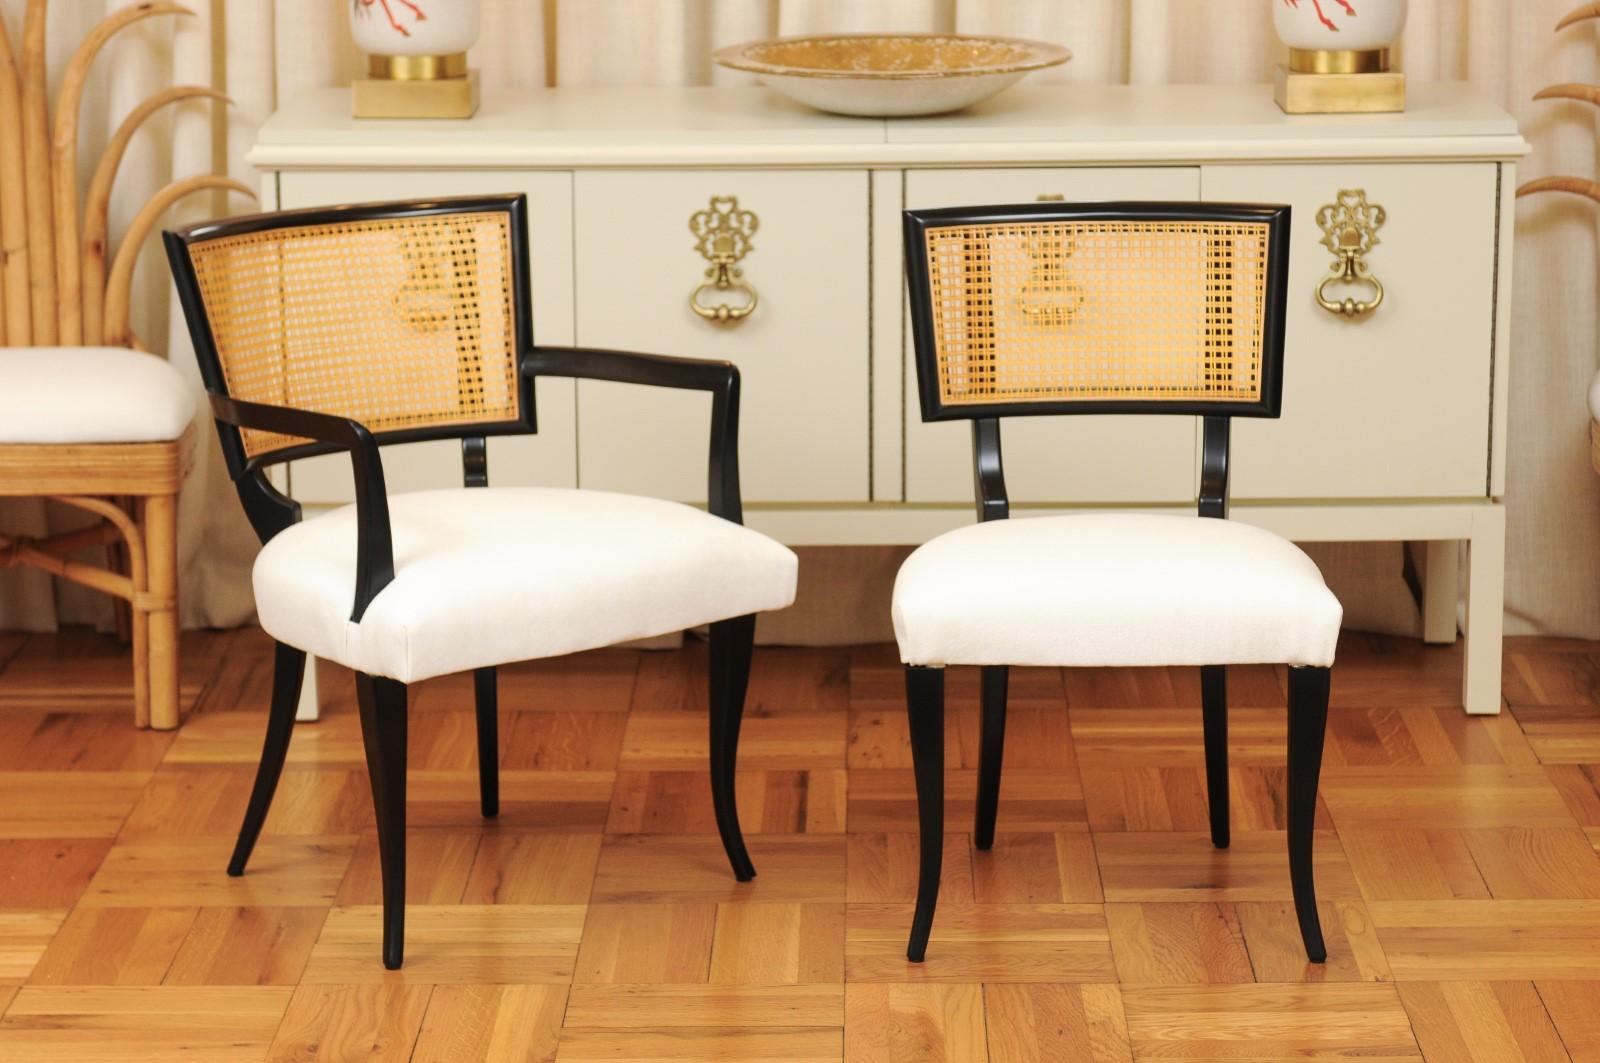 Ces magnifiques chaises de salle à manger sont expédiées telles qu'elles ont été photographiées et décrites dans l'annonce : méticuleusement restaurées par des professionnels, rembourrées par des experts et entièrement prêtes à être installées. Ce